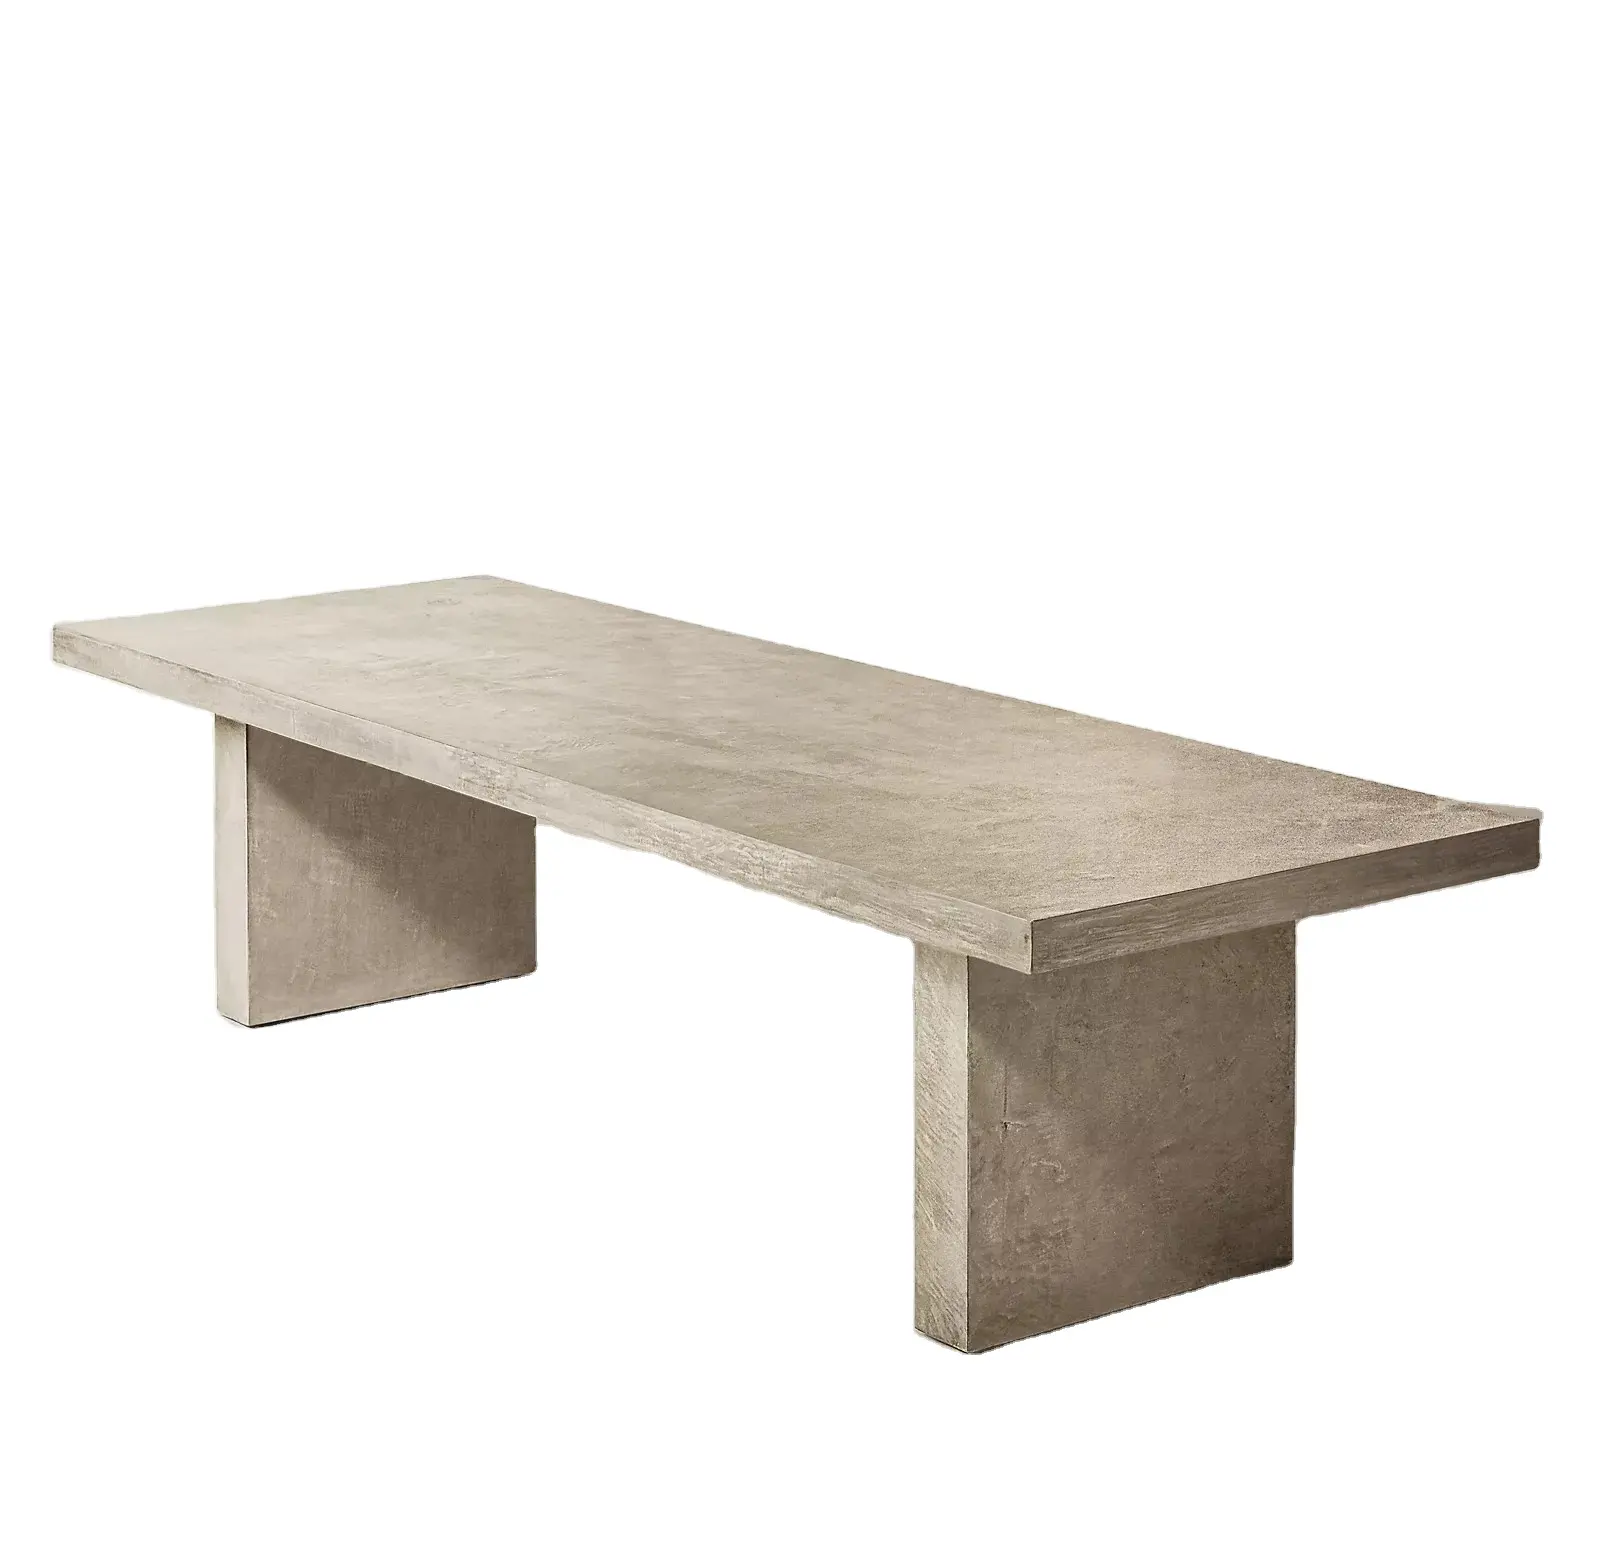 מודרני בסגנון אמריקאי אוכל חדר שעווה בטון מוצק עץ שולחן מלבני שעווה בטון אוכל שולחן וכיסאות להגדיר